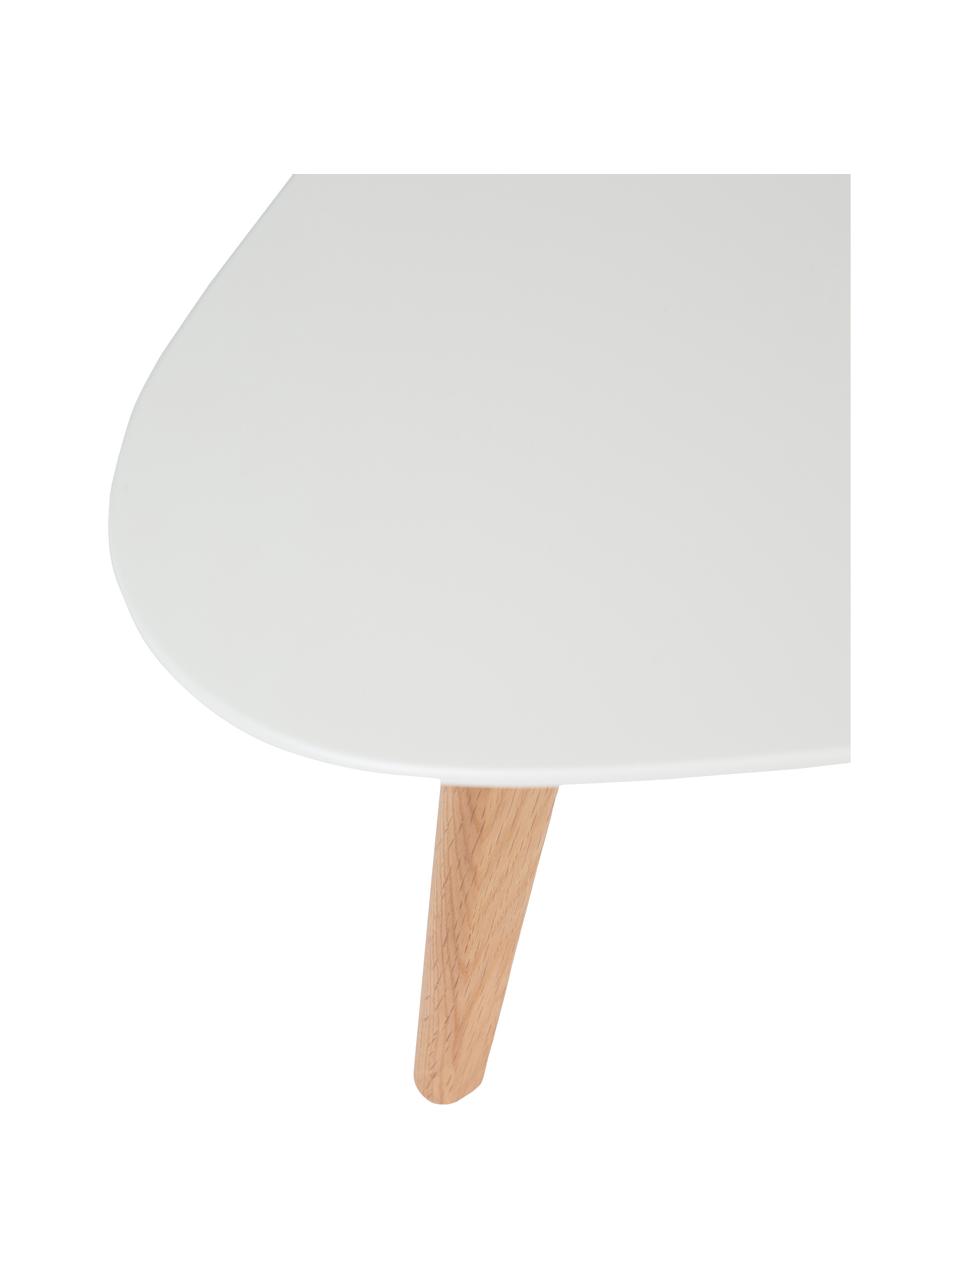 Ovales Couchtisch-Set Nordic, 2-tlg., Beine: Massives Eichenholz, Weiß, Eichenholz, Set mit verschiedenen Größen